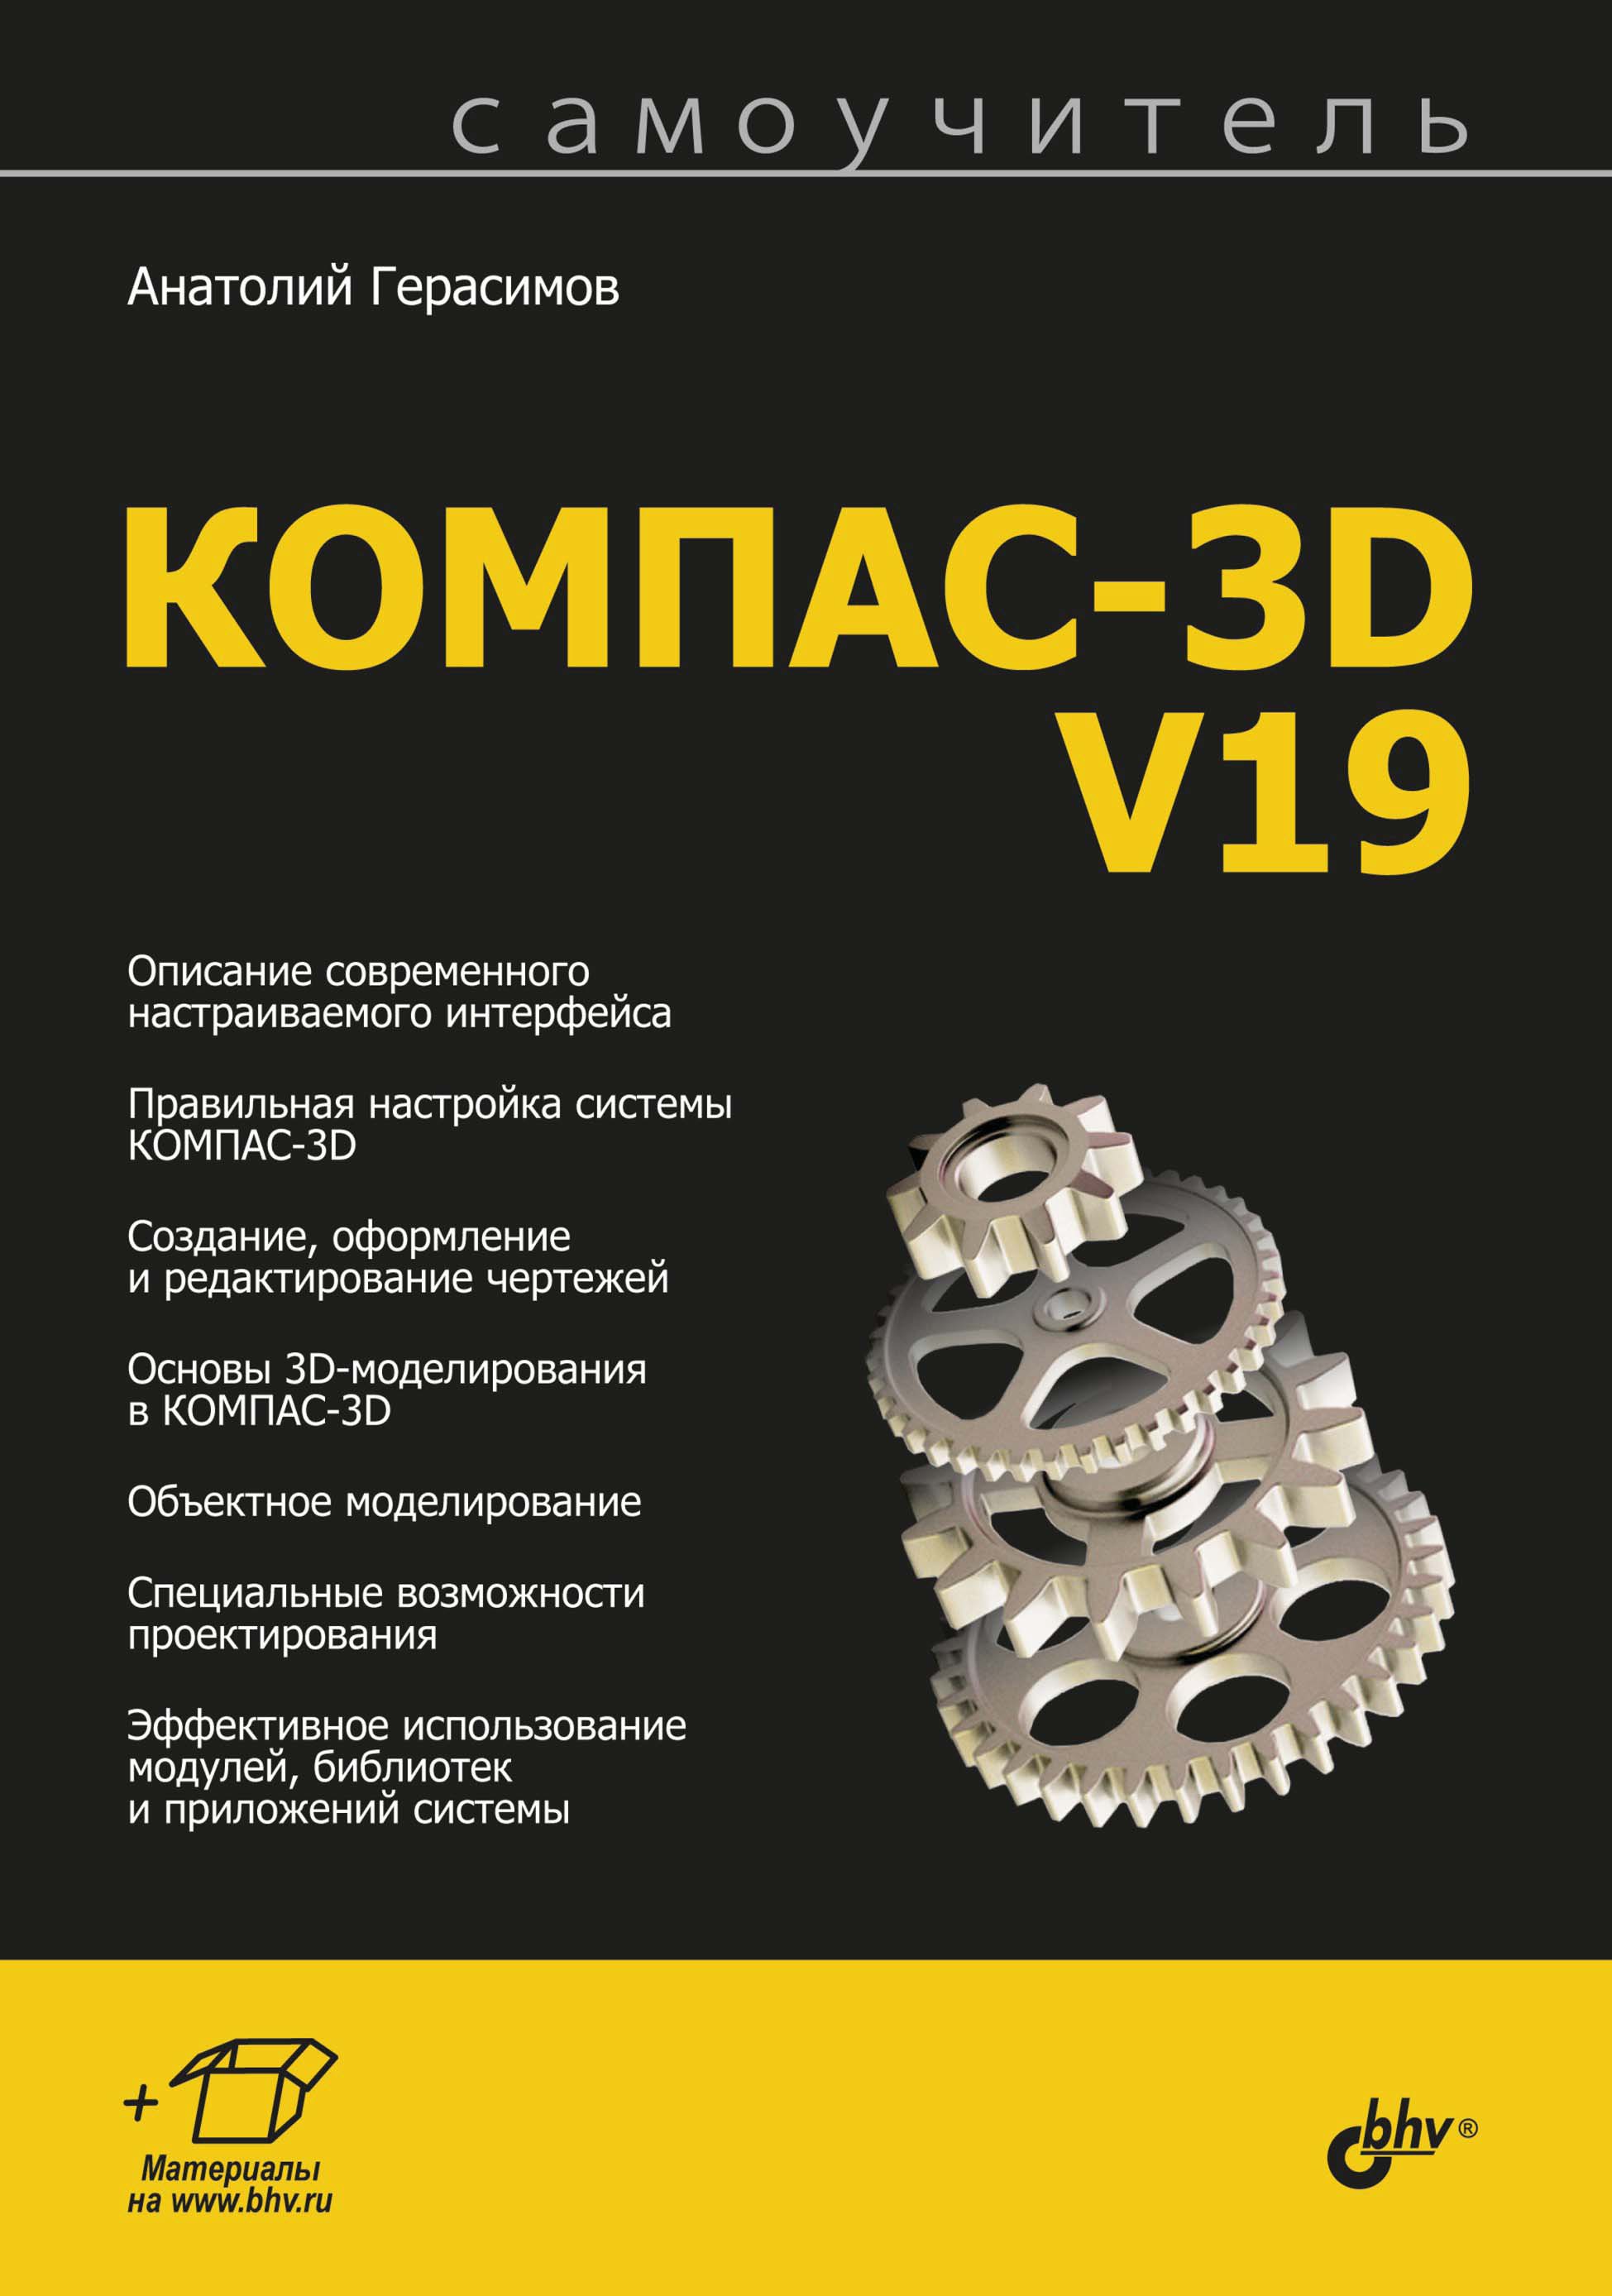 Книга  Самоучитель КОМПАС-3D V19 созданная Анатолий Герасимов может относится к жанру программы, проектирование. Стоимость электронной книги Самоучитель КОМПАС-3D V19 с идентификатором 67726629 составляет 449.00 руб.